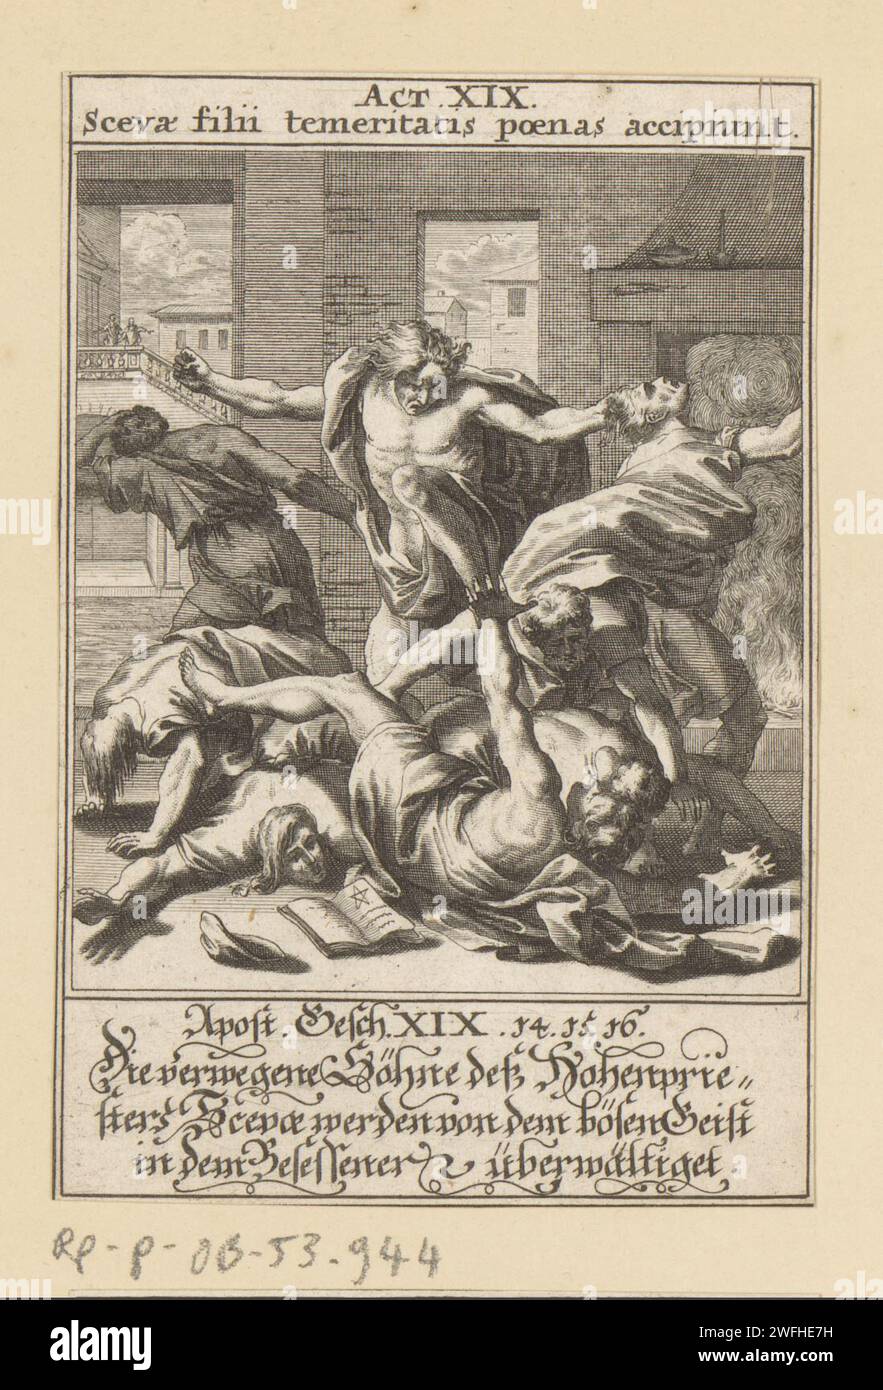 Söhne von Sceva überwältigt von einem besessenen Mann, Anonym, nach Johann Jakob von Sandrart, 1697 Druckpapier mit sieben Exorzisten, Söhne von Sceva, werden von einem Mann mit bösem Geist geschlagen und fliehen Stockfoto